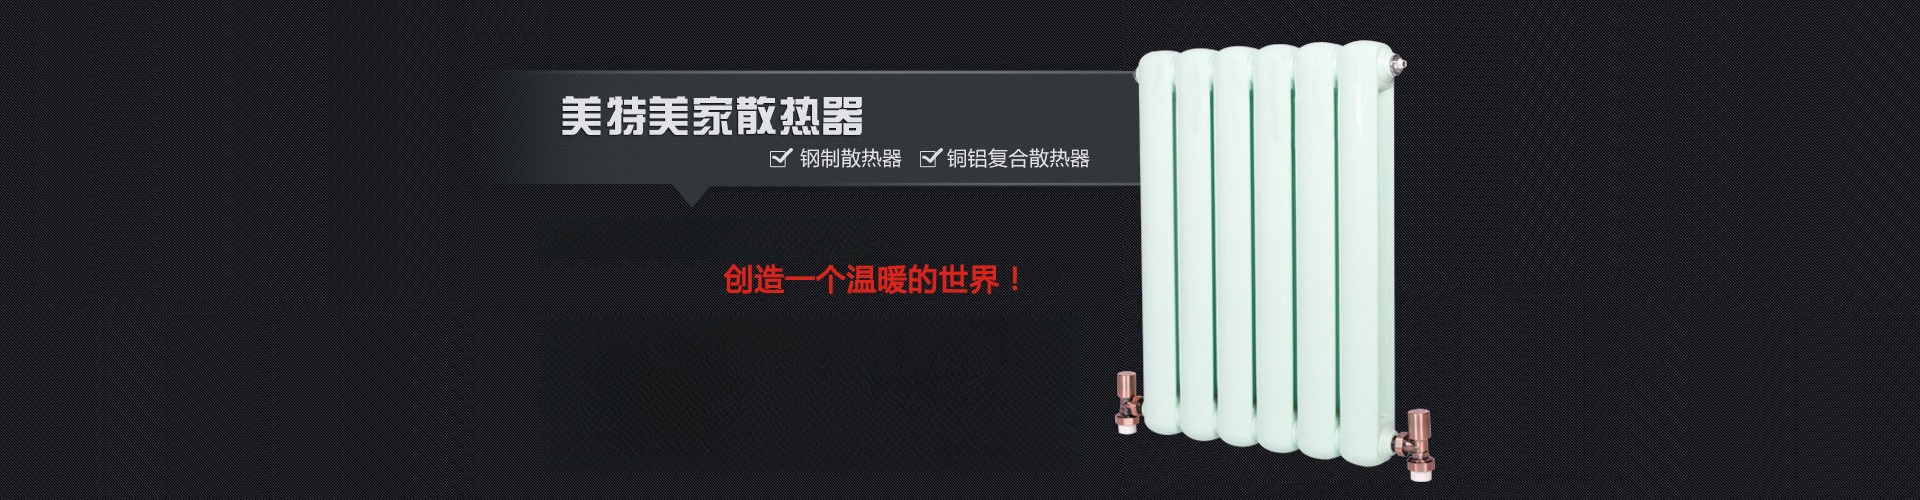 美特美家散热器|北京美特美家暖通设备有限公司